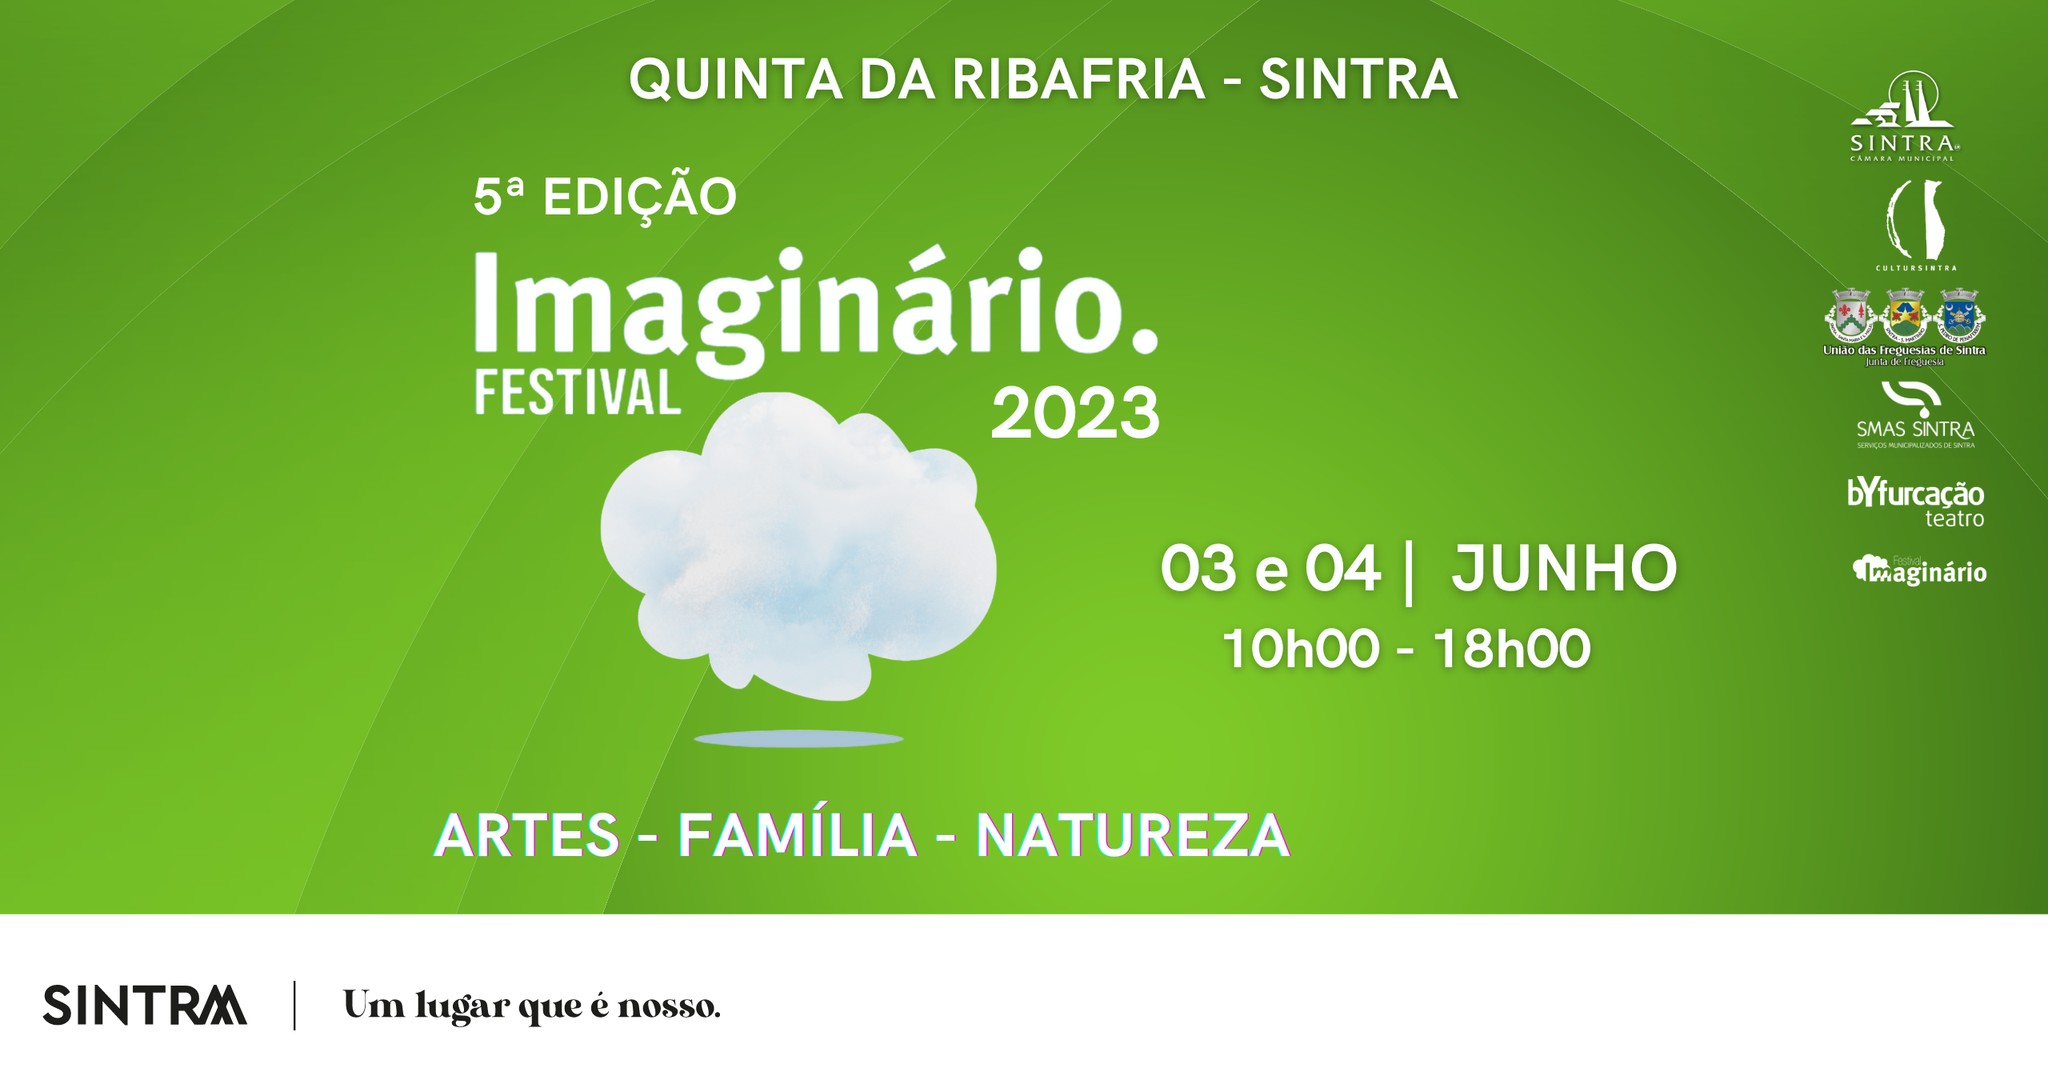 Festival Imaginário 2023 | Quinta da Ribafria, Sintra